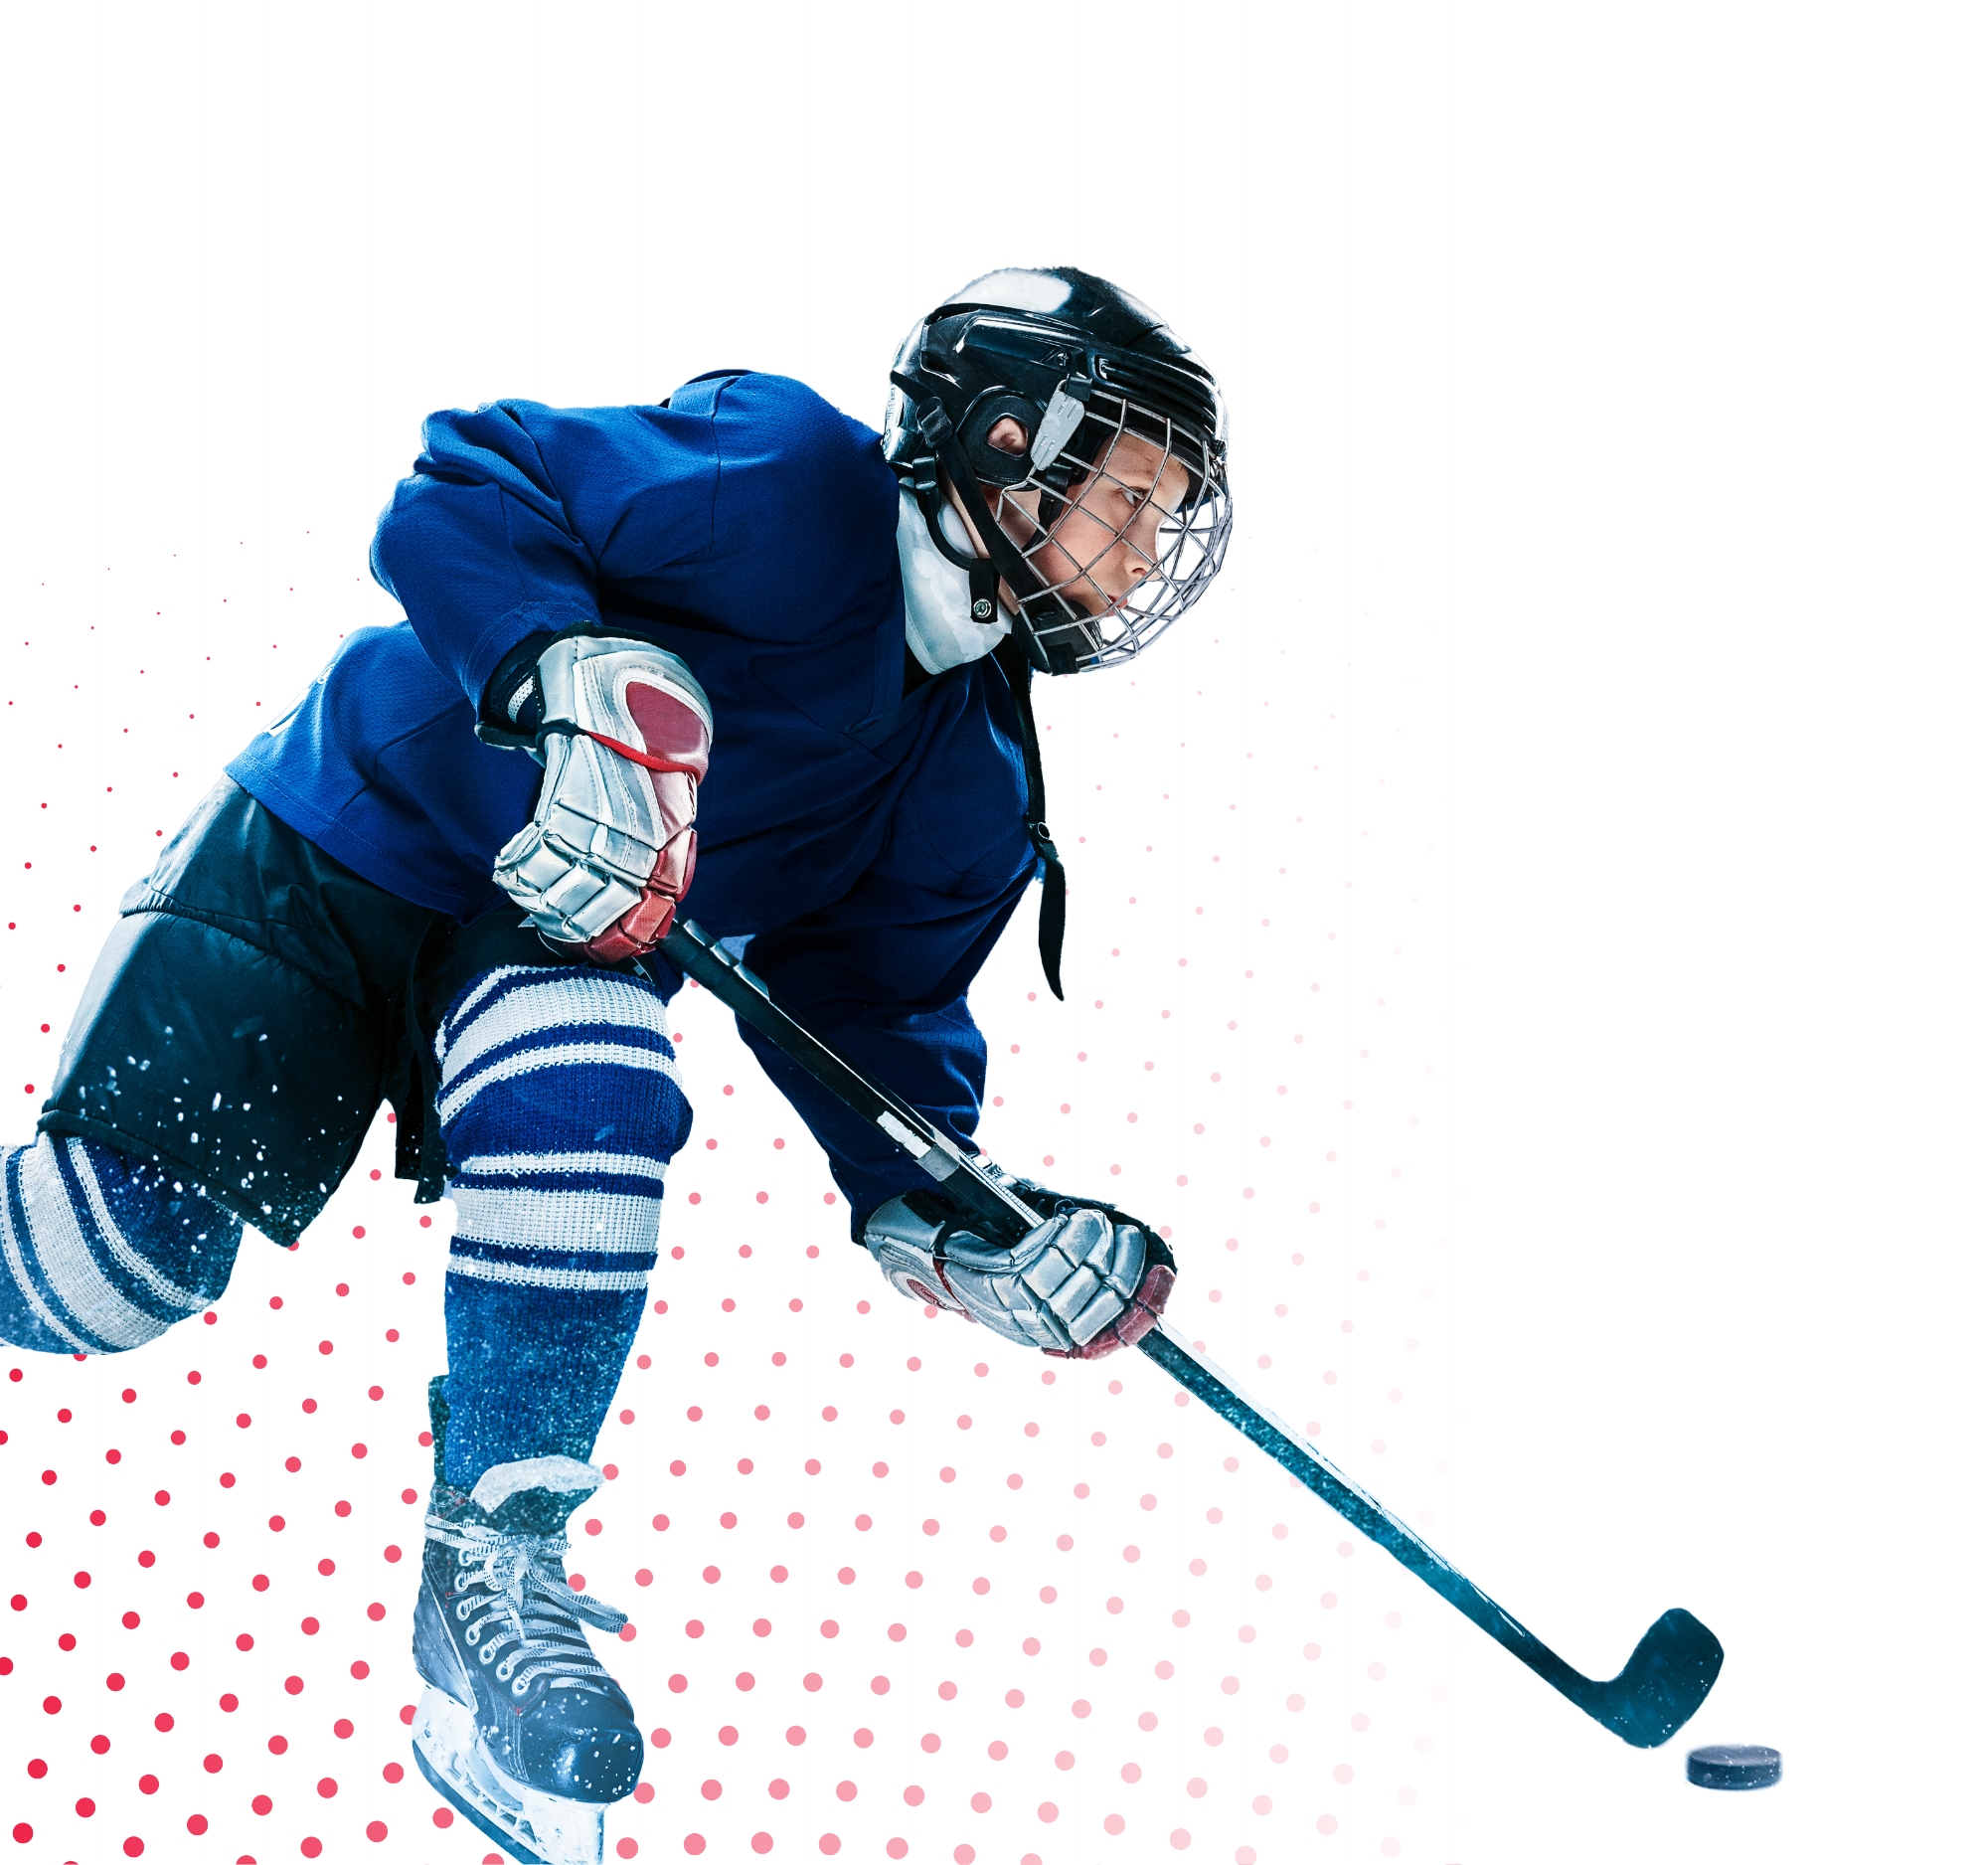 a boy in a hockey uniform hitting a puck